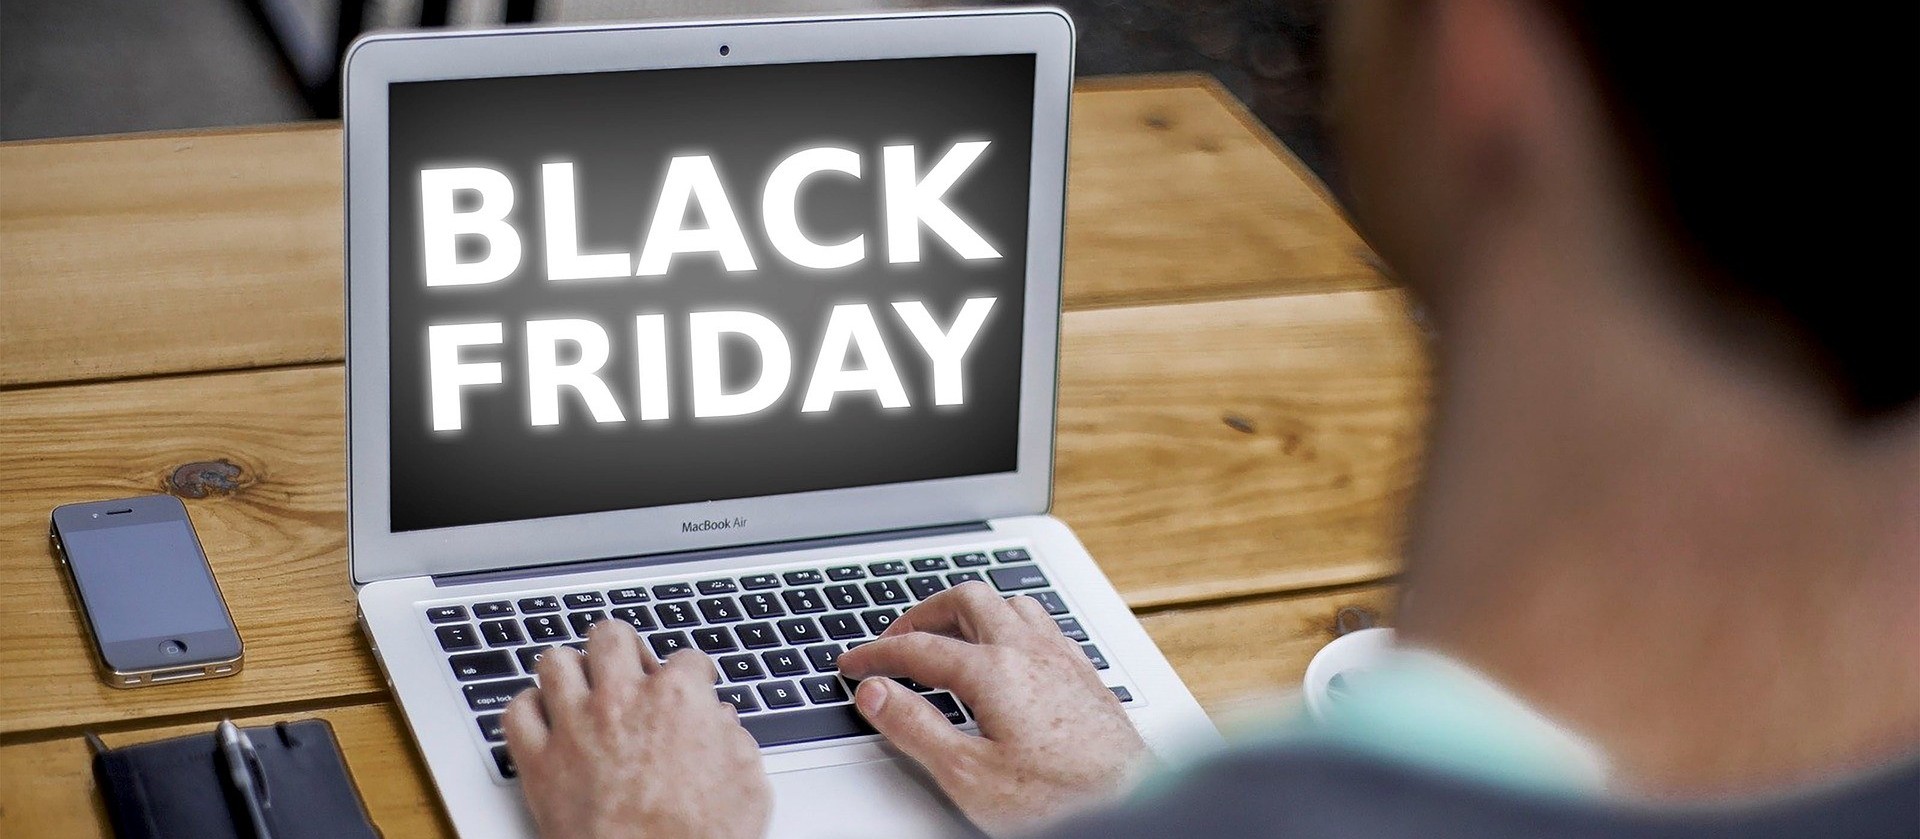 Black Friday se aproxima e especialista dá dicas para preparar o seu e-commerce